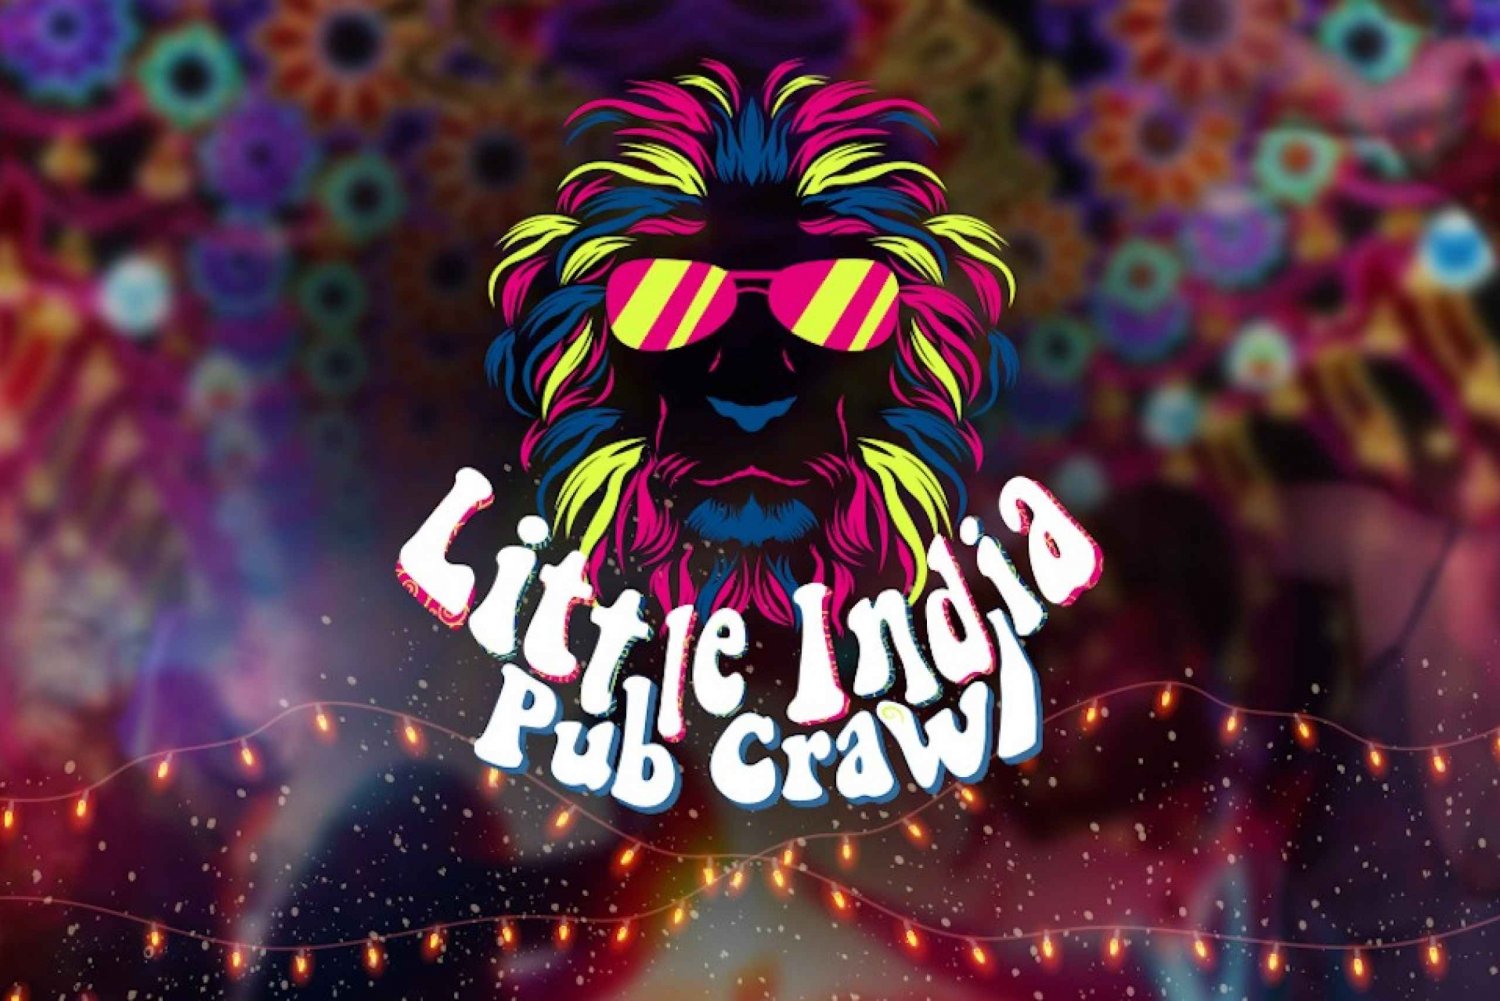 Little India Pub Crawl